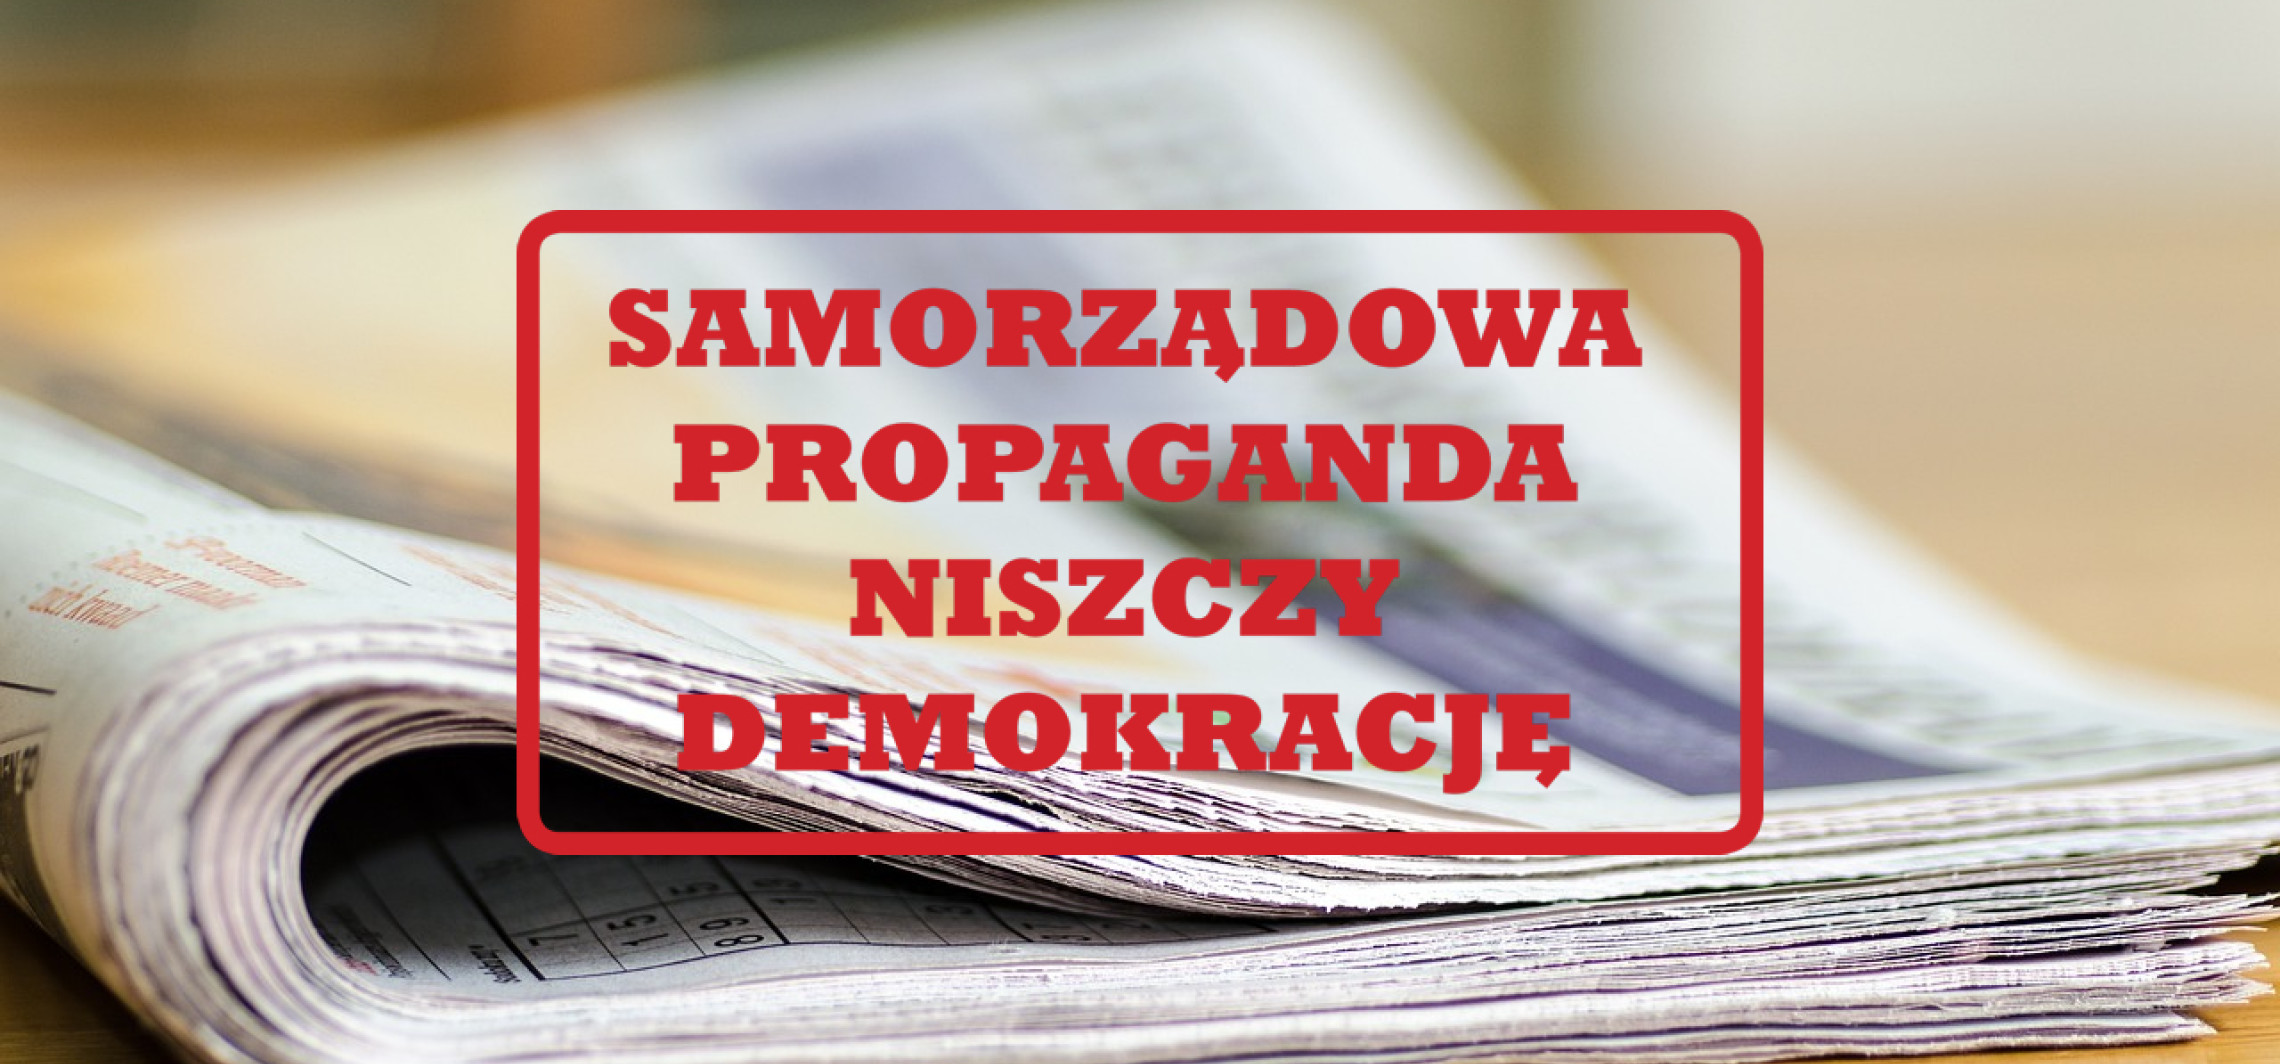 Inowrocław - Wydawcy i dziennikarze protestują. Propagandowe media samorządowe niszczą lokalną demokrację